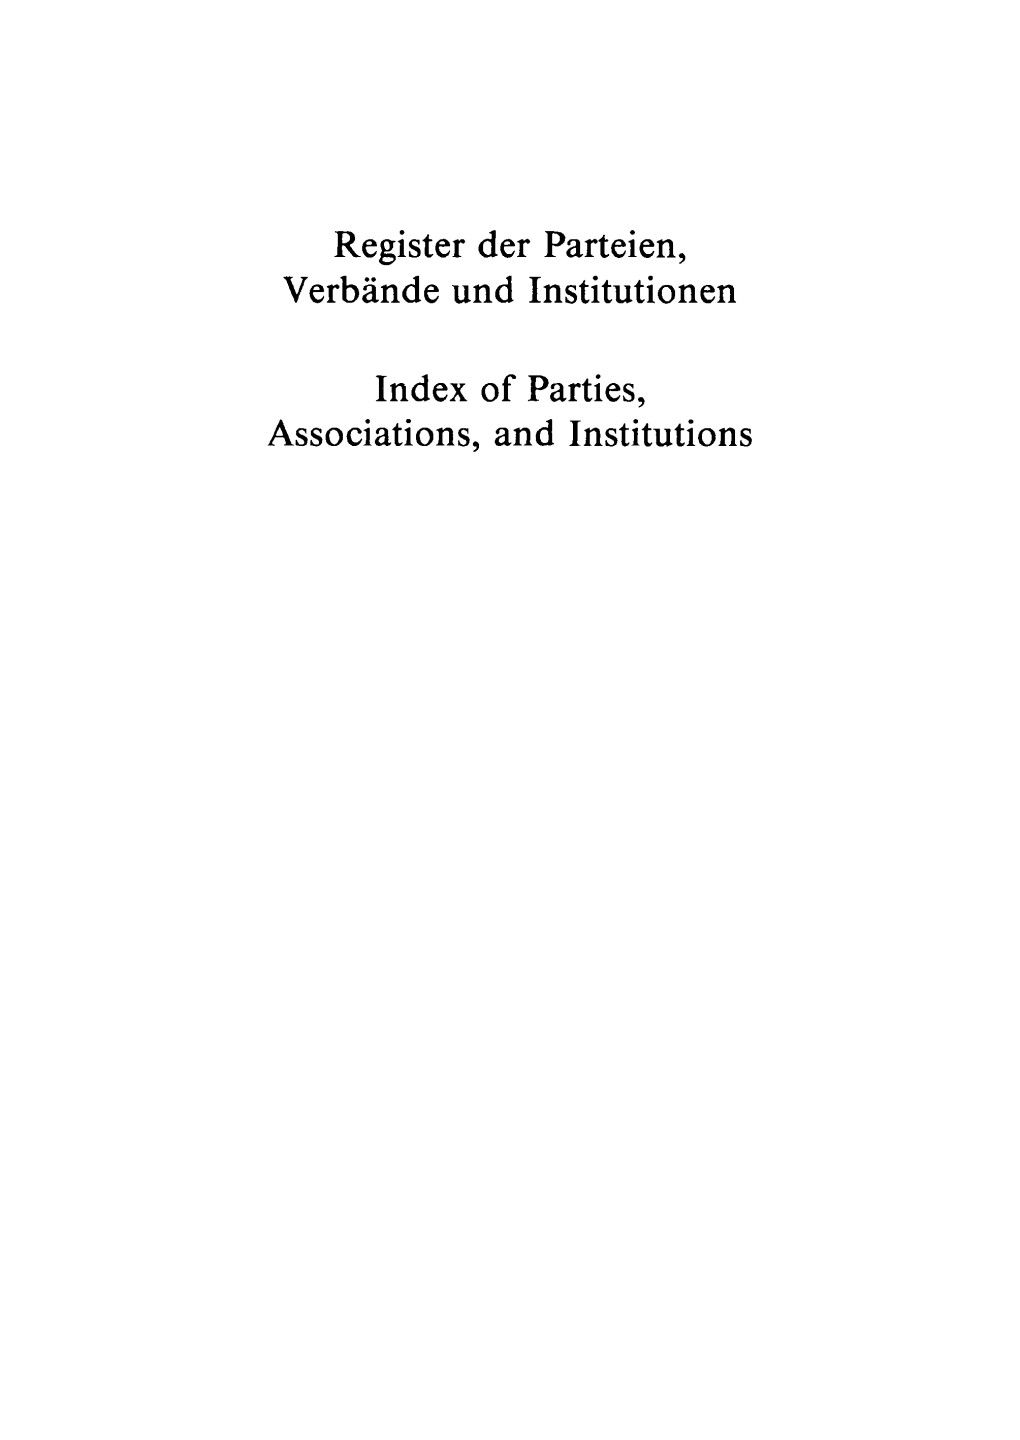 Register Der Parteien, Verbände Und Institutionen Index of Parties, Associations, and Institutions